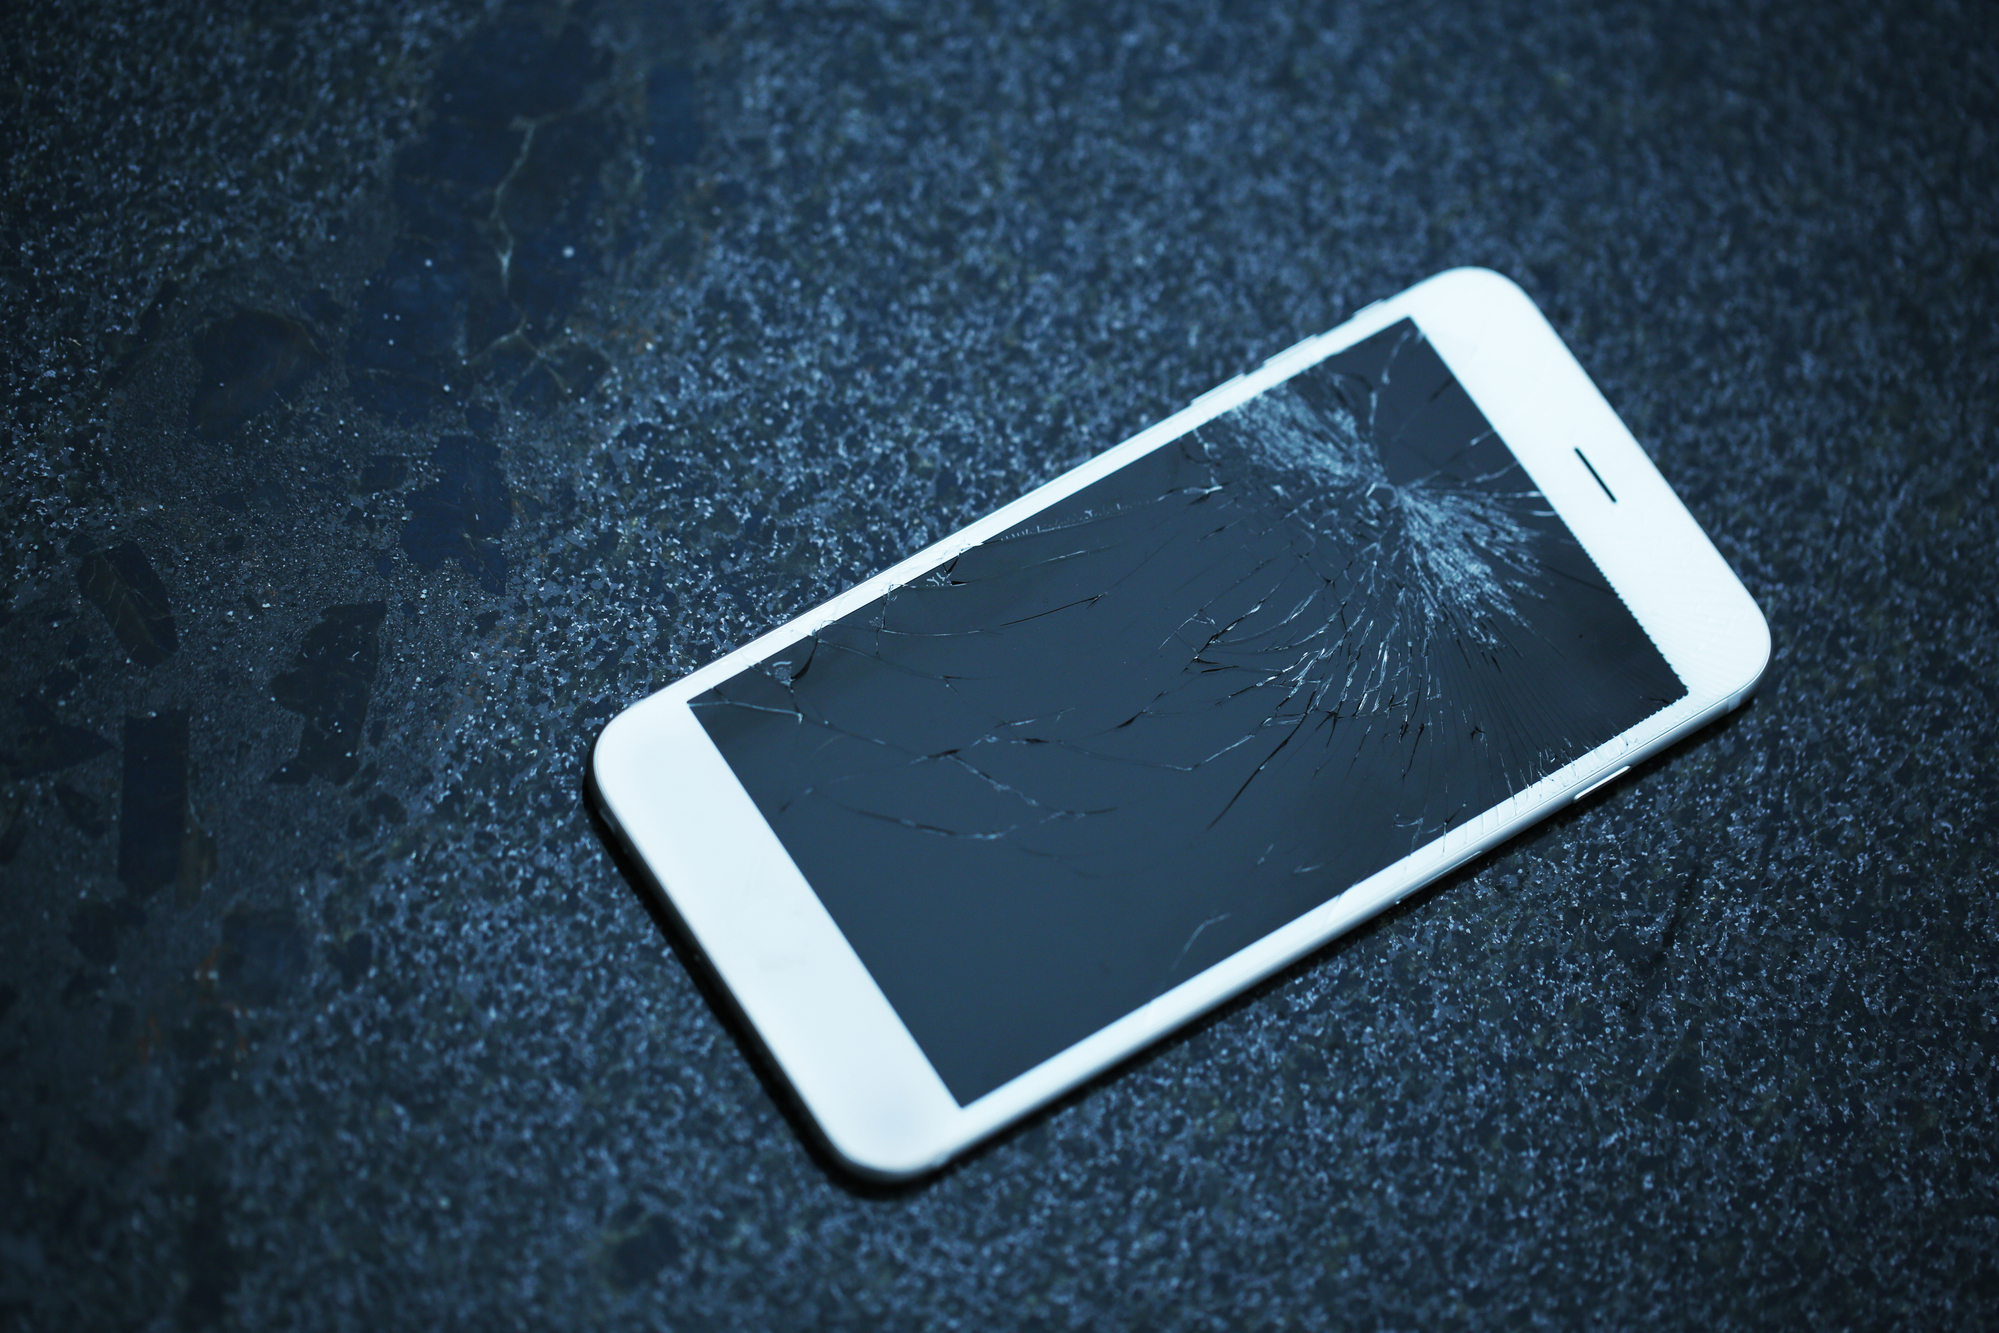 Сломанный телефон с друзьями. Разбитый айфон на асфальте. Разбитый экран планшета. Сломанный телефон. Разбитый телефон на асфальте фото.